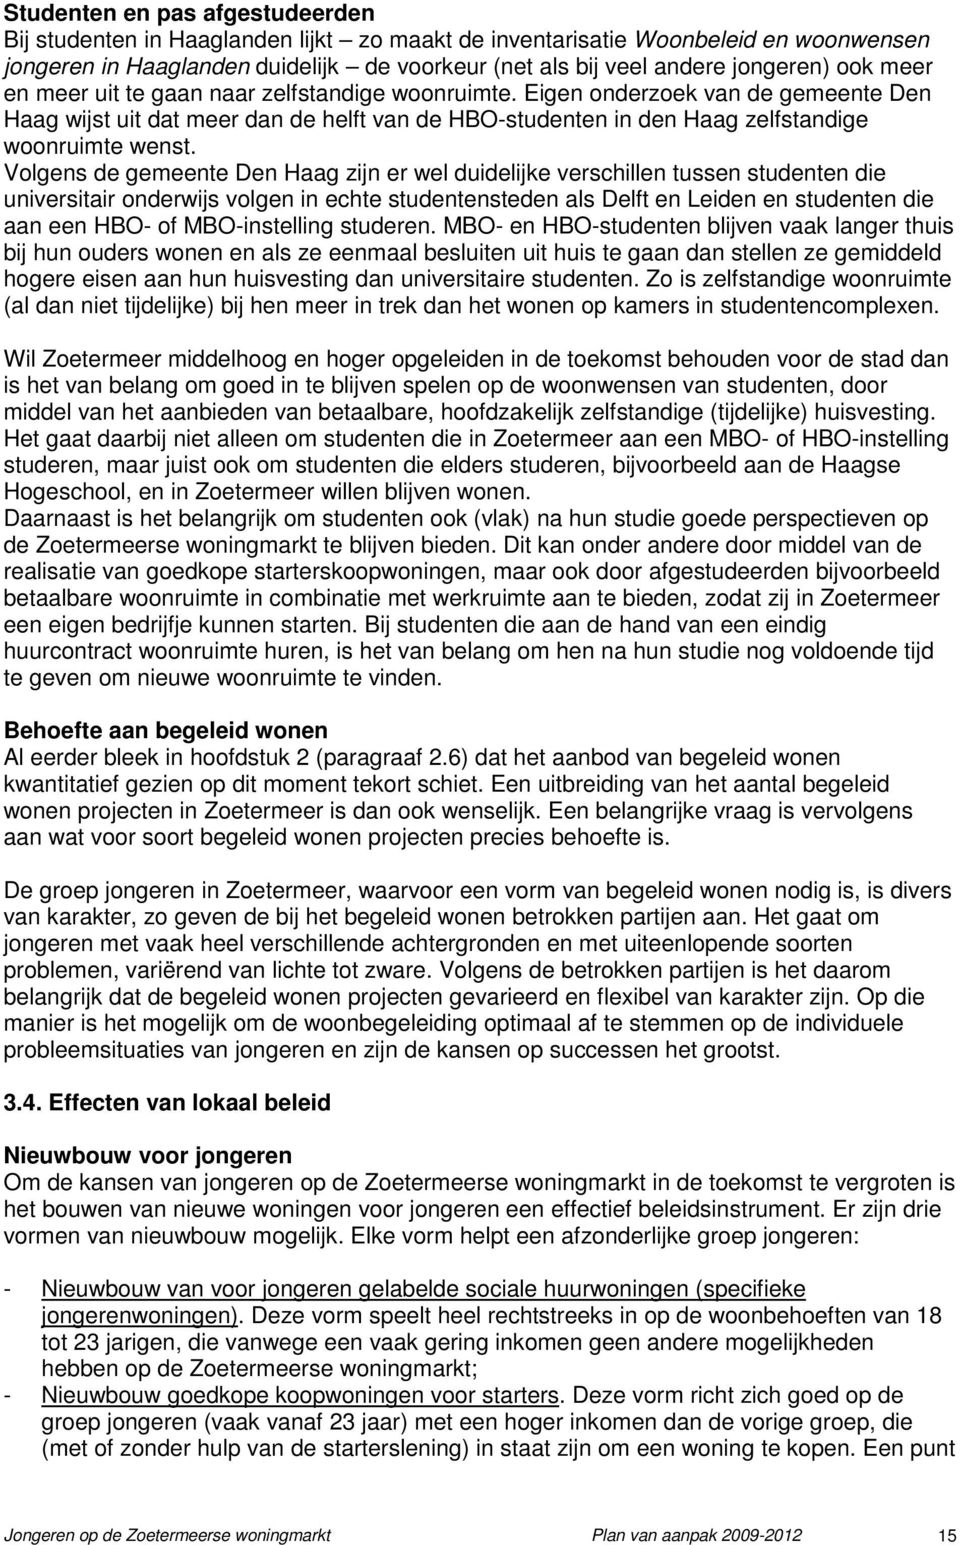 Volgens de gemeente Den Haag zijn er wel duidelijke verschillen tussen studenten die universitair onderwijs volgen in echte studentensteden als Delft en Leiden en studenten die aan een HBO- of